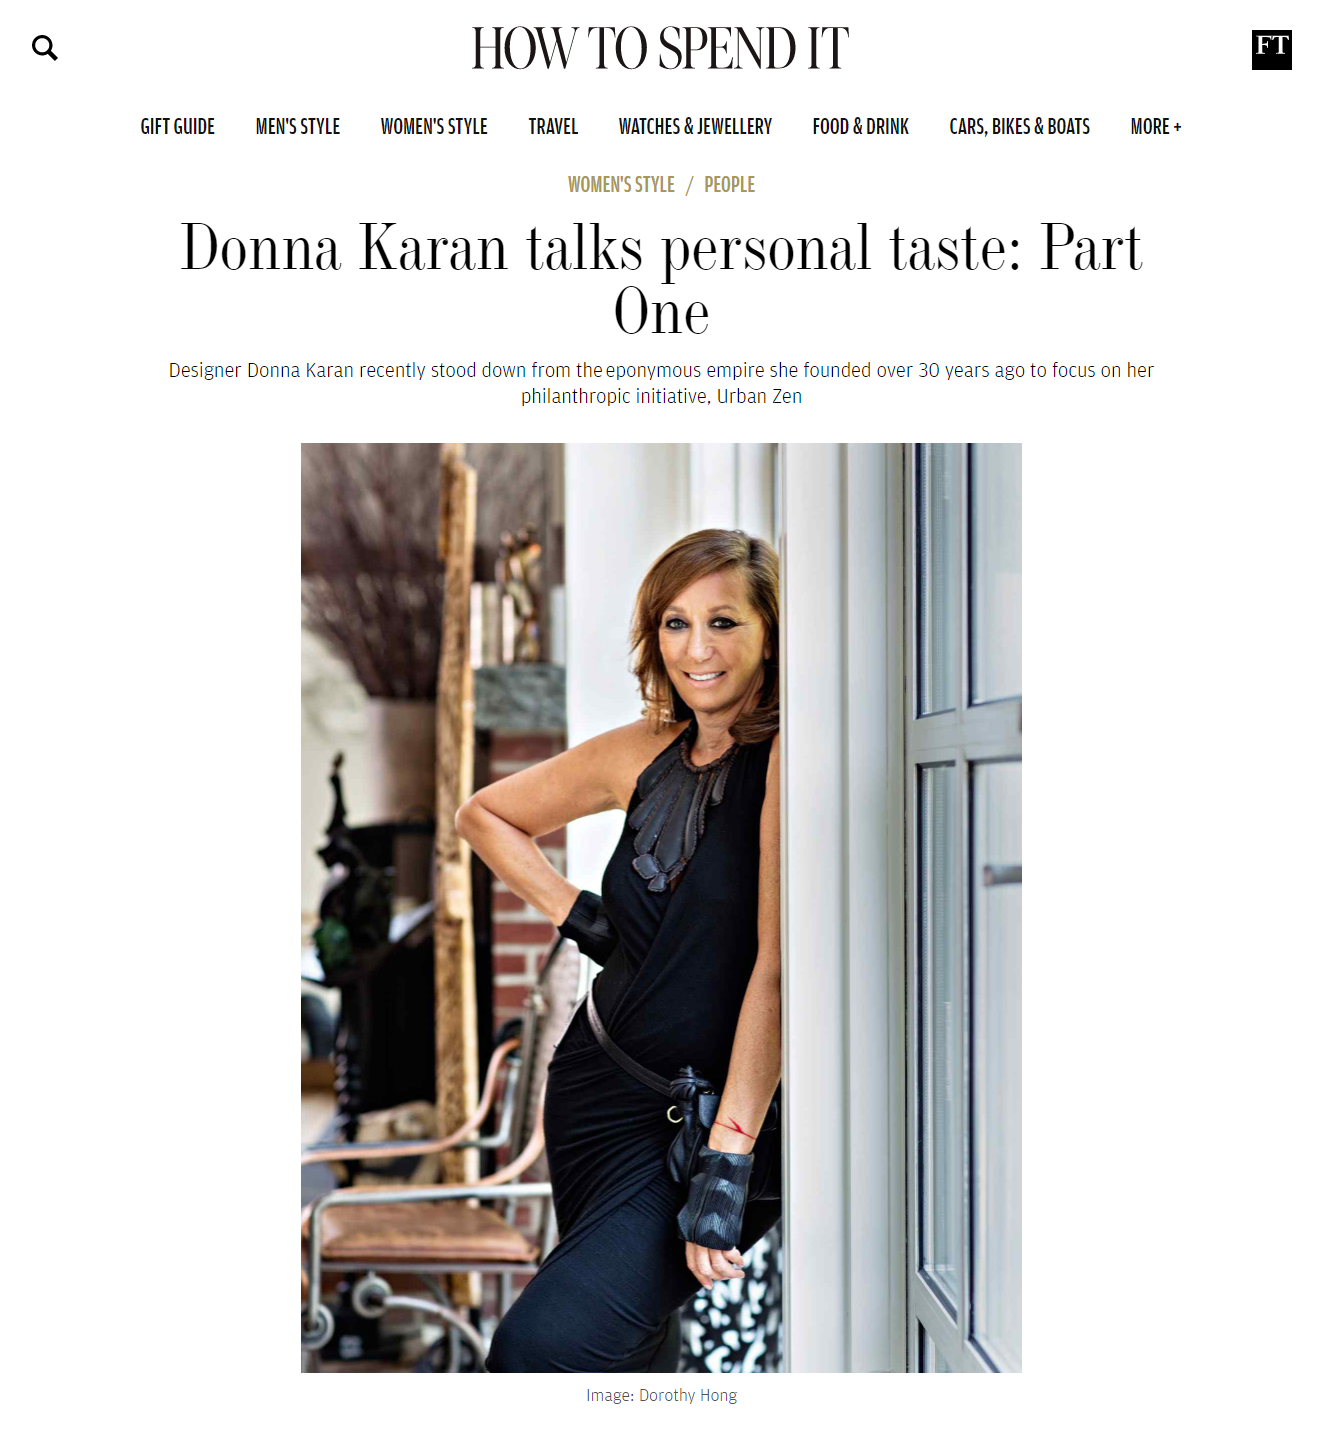 Donna in detail: Donna Karan's new memoir, 'My Journey